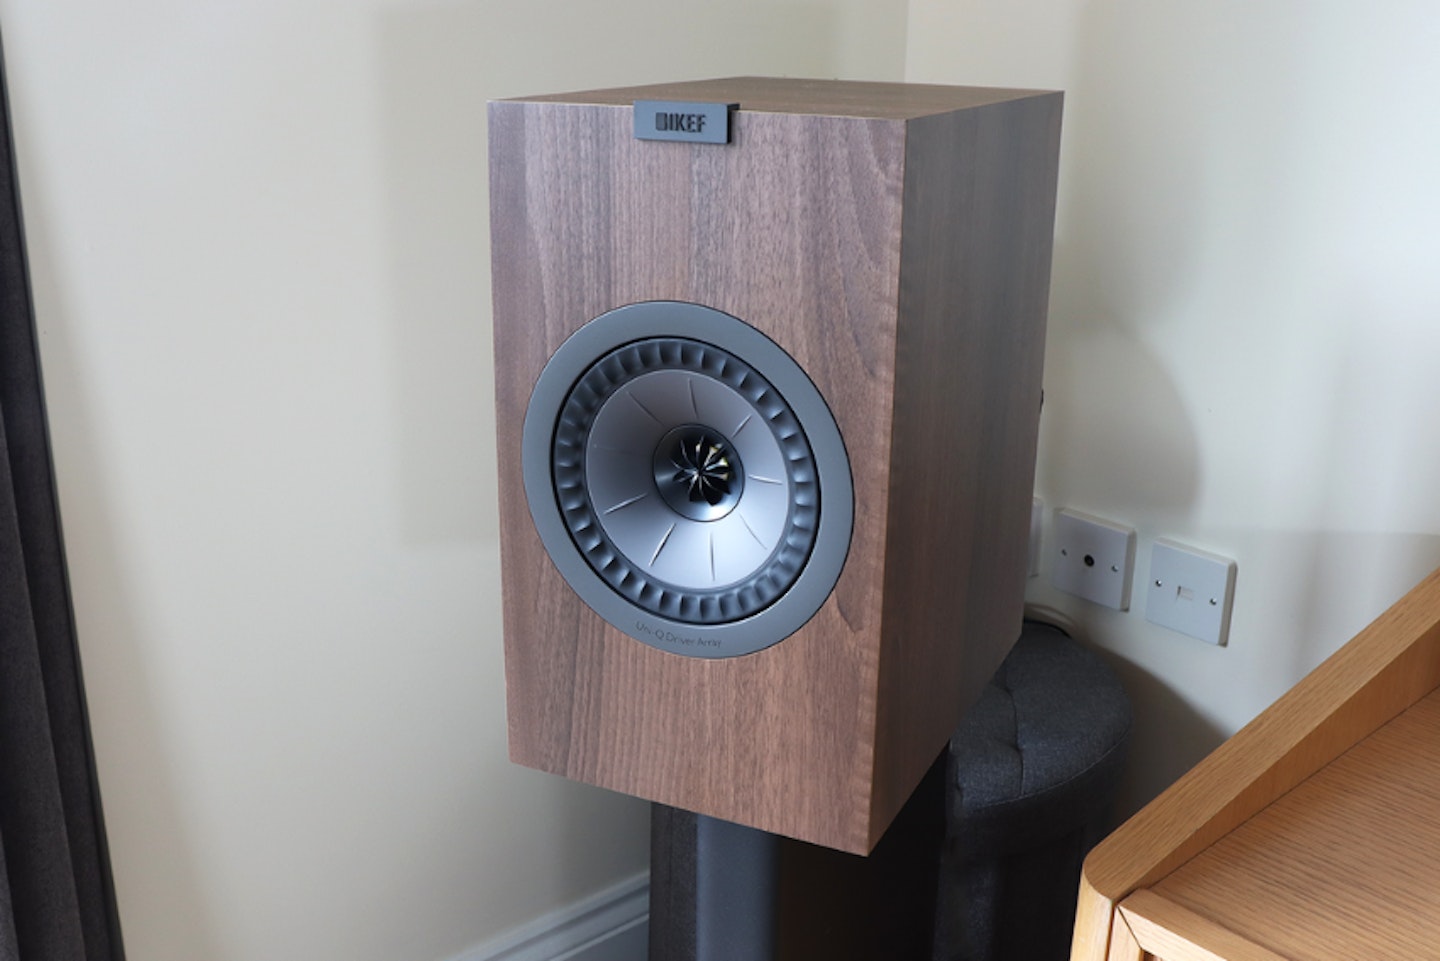 KEF Q350 bookshelf speakers